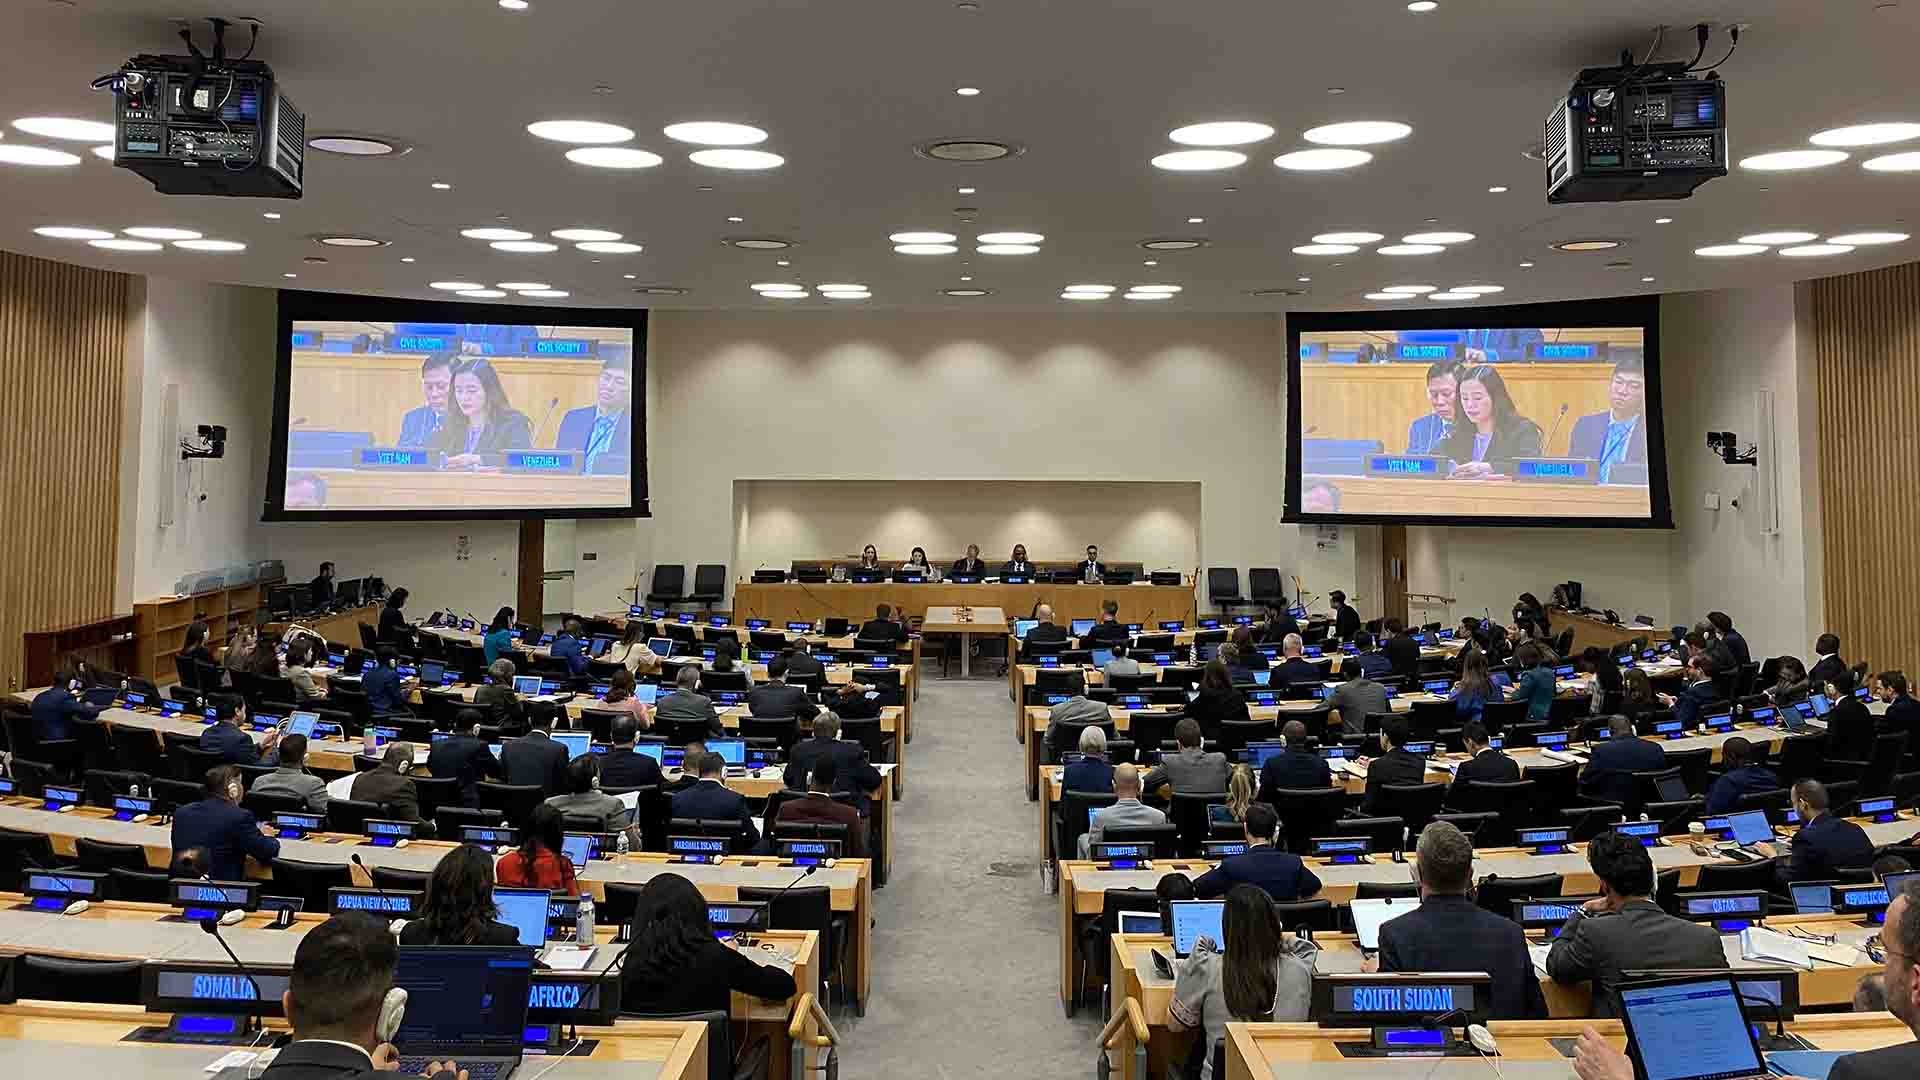 Phiên họp lần thứ 4 của Nhóm công tác về xây dựng khuôn khổ toàn cầu về quản lý đạn dược đã diễn ra với sự tham gia của đại diện 193 quốc gia thành viên Liên hợp quốc và nhiều tổ chức quốc tế liên quan.